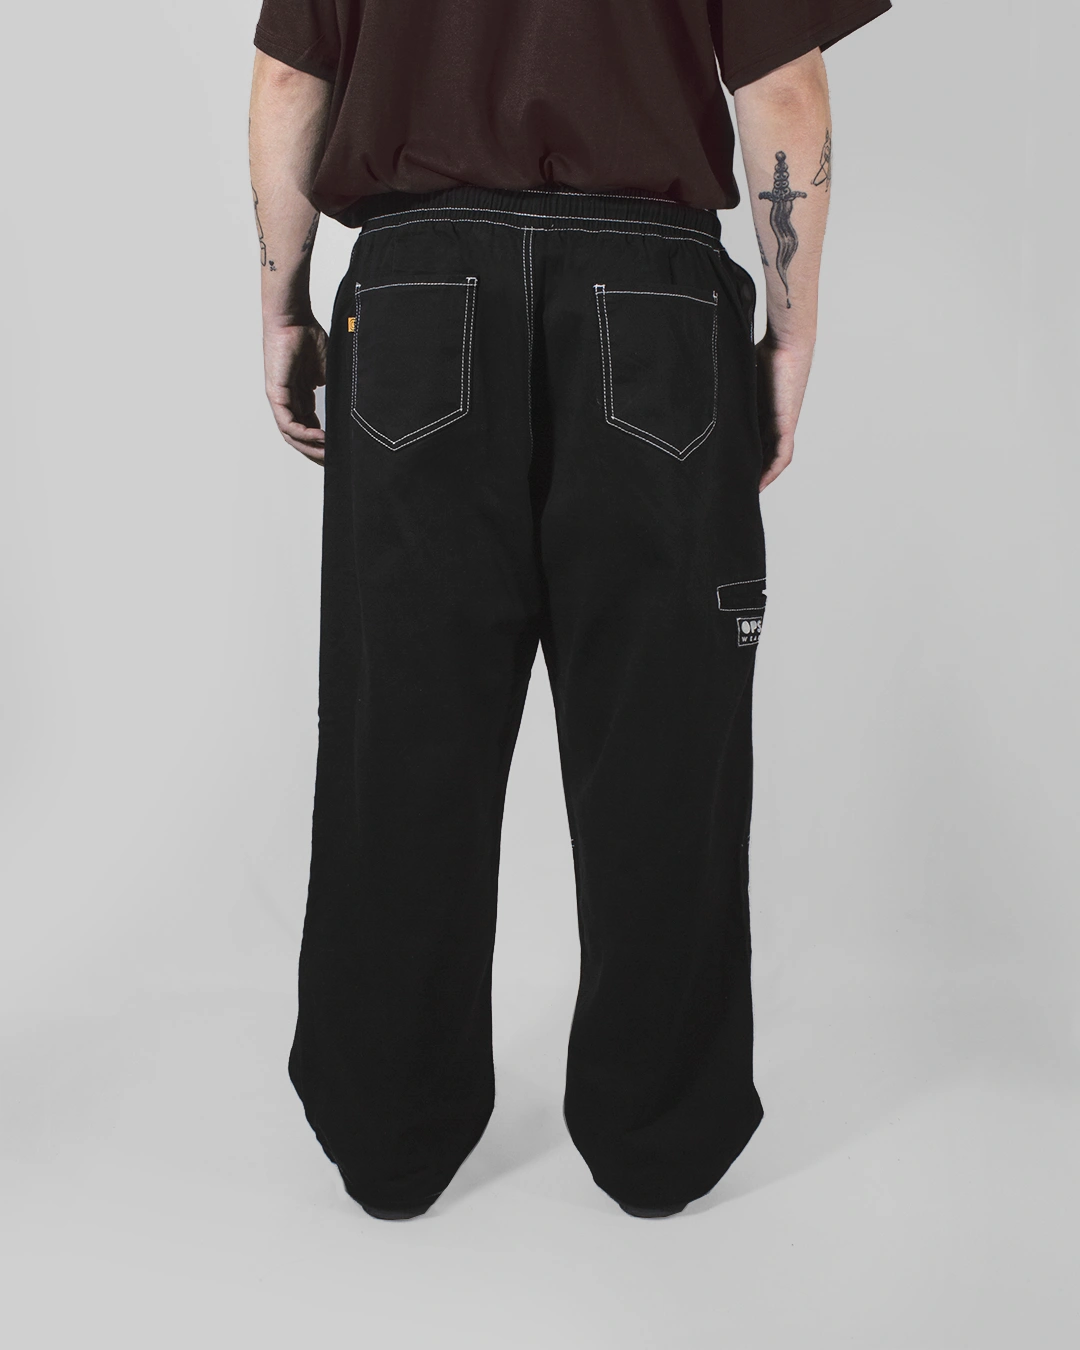 pantalón negro detalle porta llave cintura elastica cordon costuras expuestas invertidas espalda ancho skater